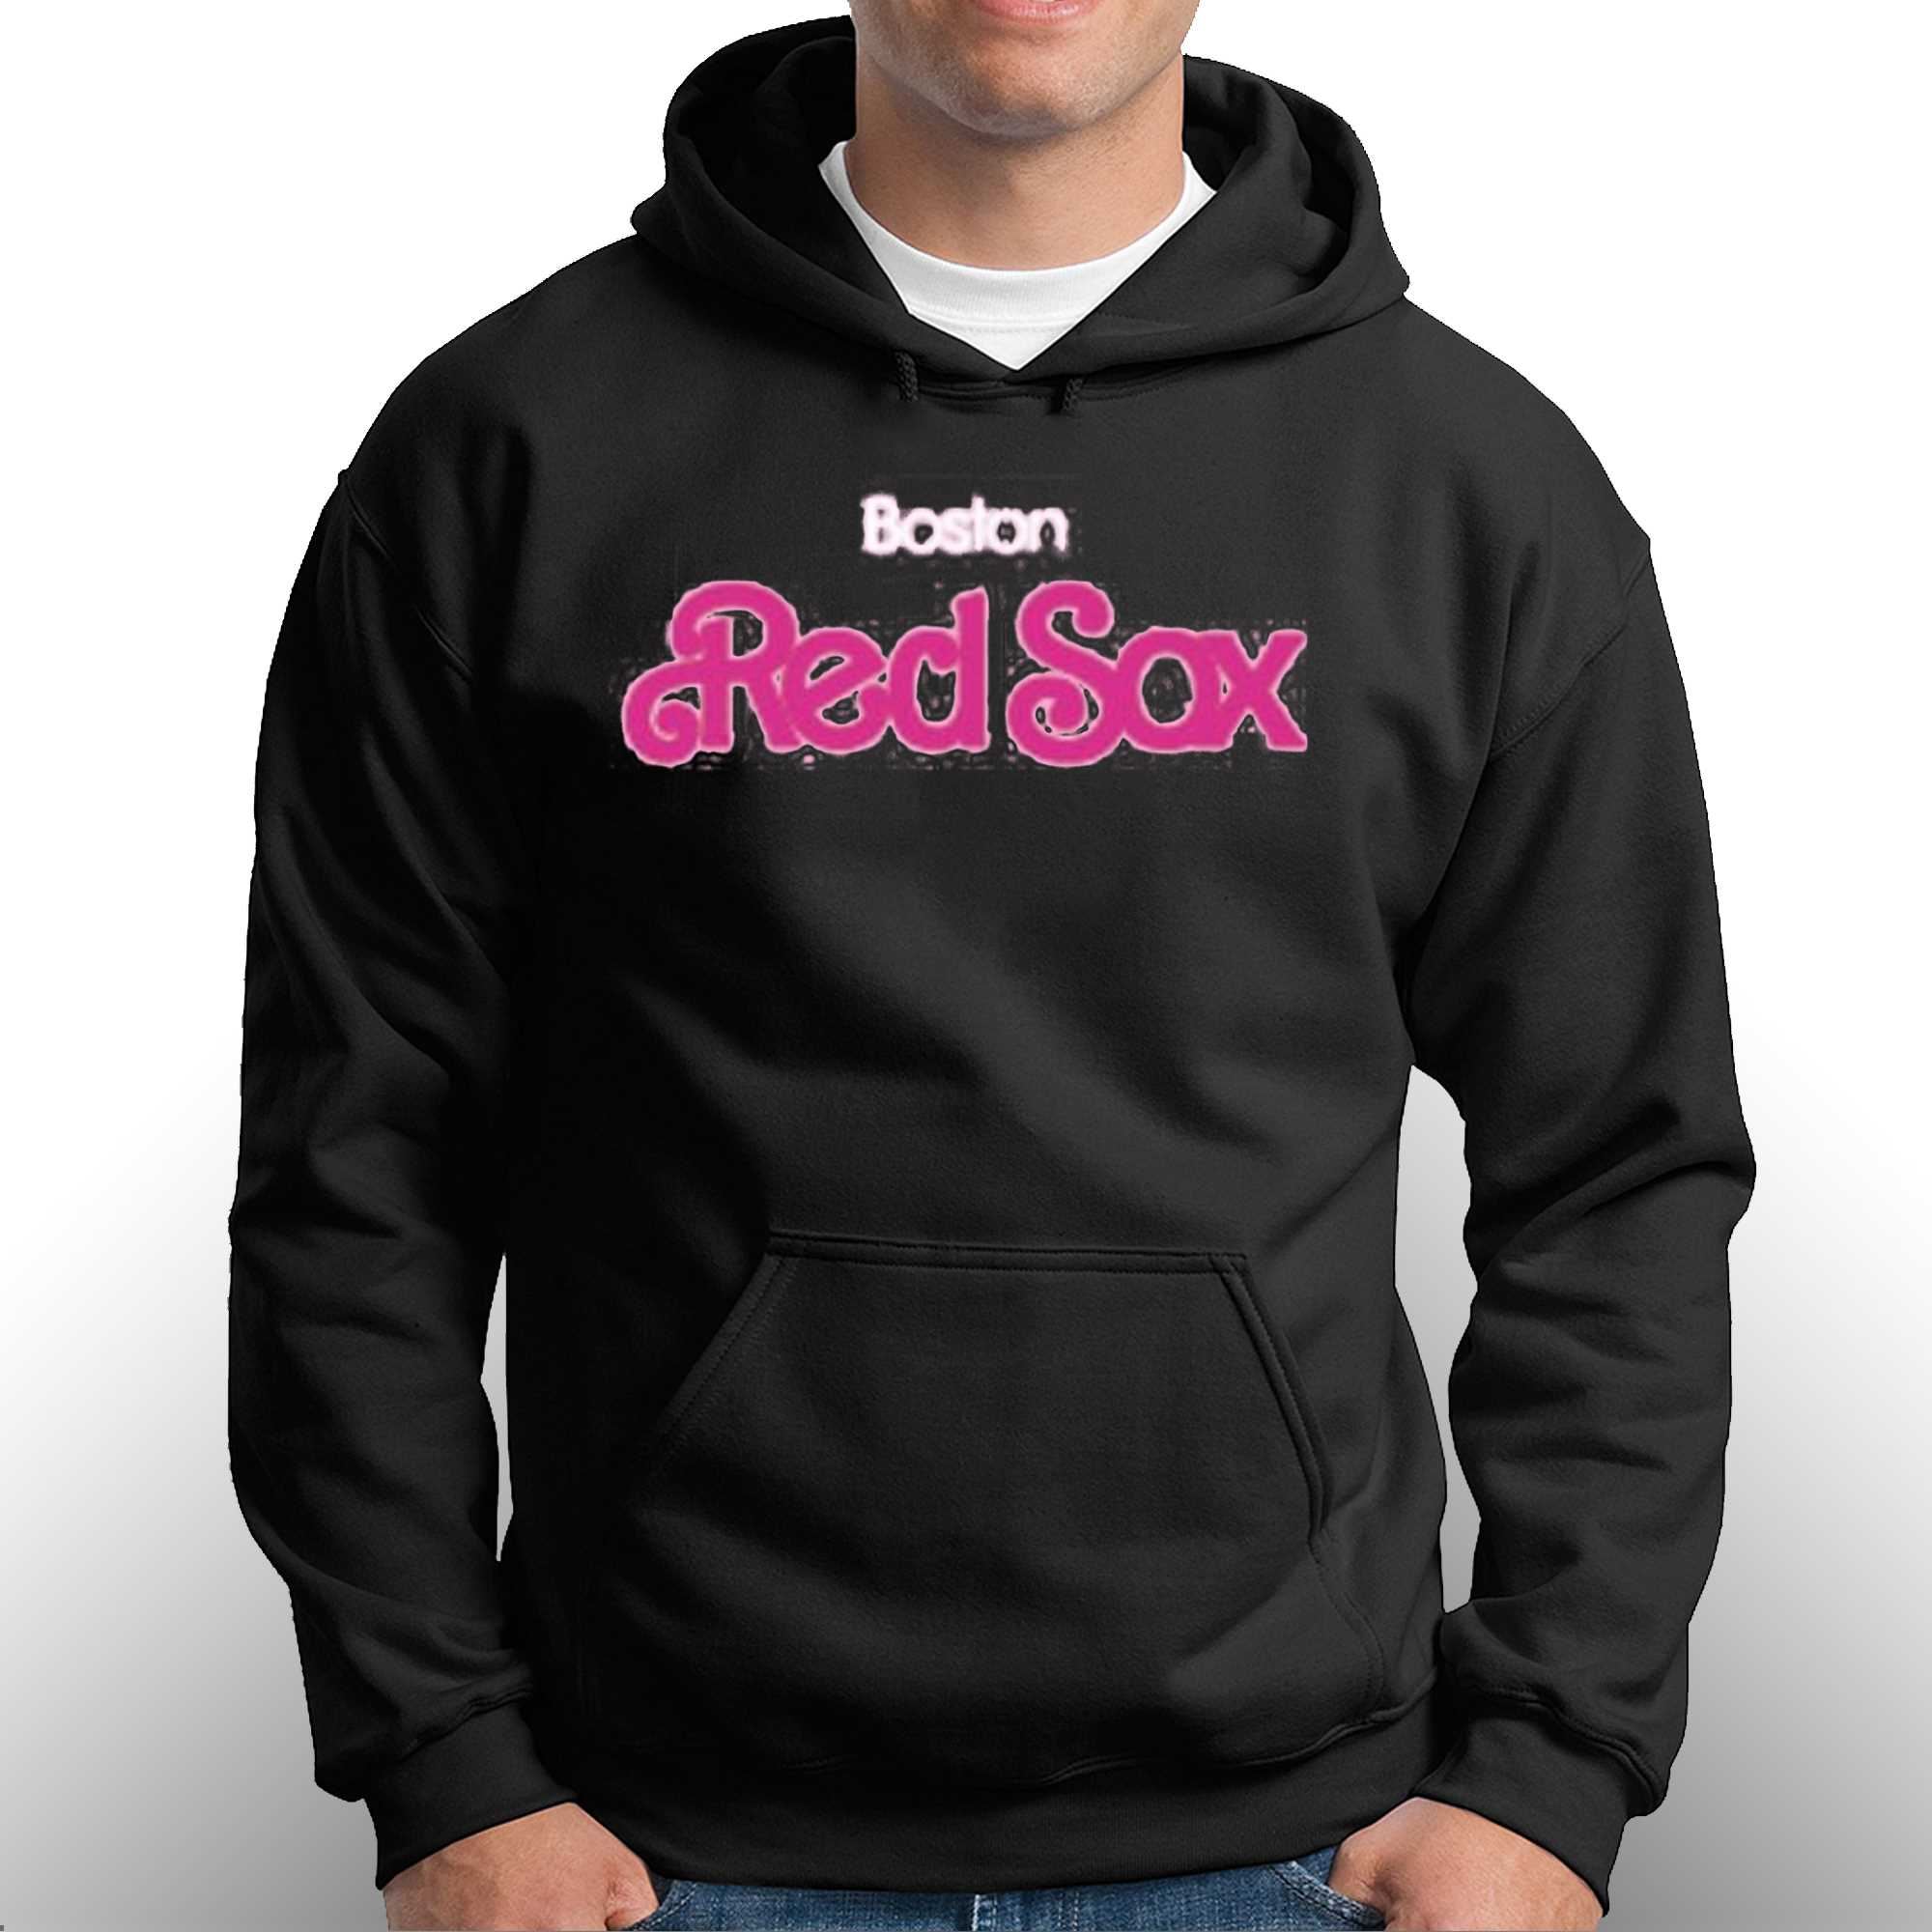 Boston Red Sox Barbie Night Shirt - Shibtee Clothing